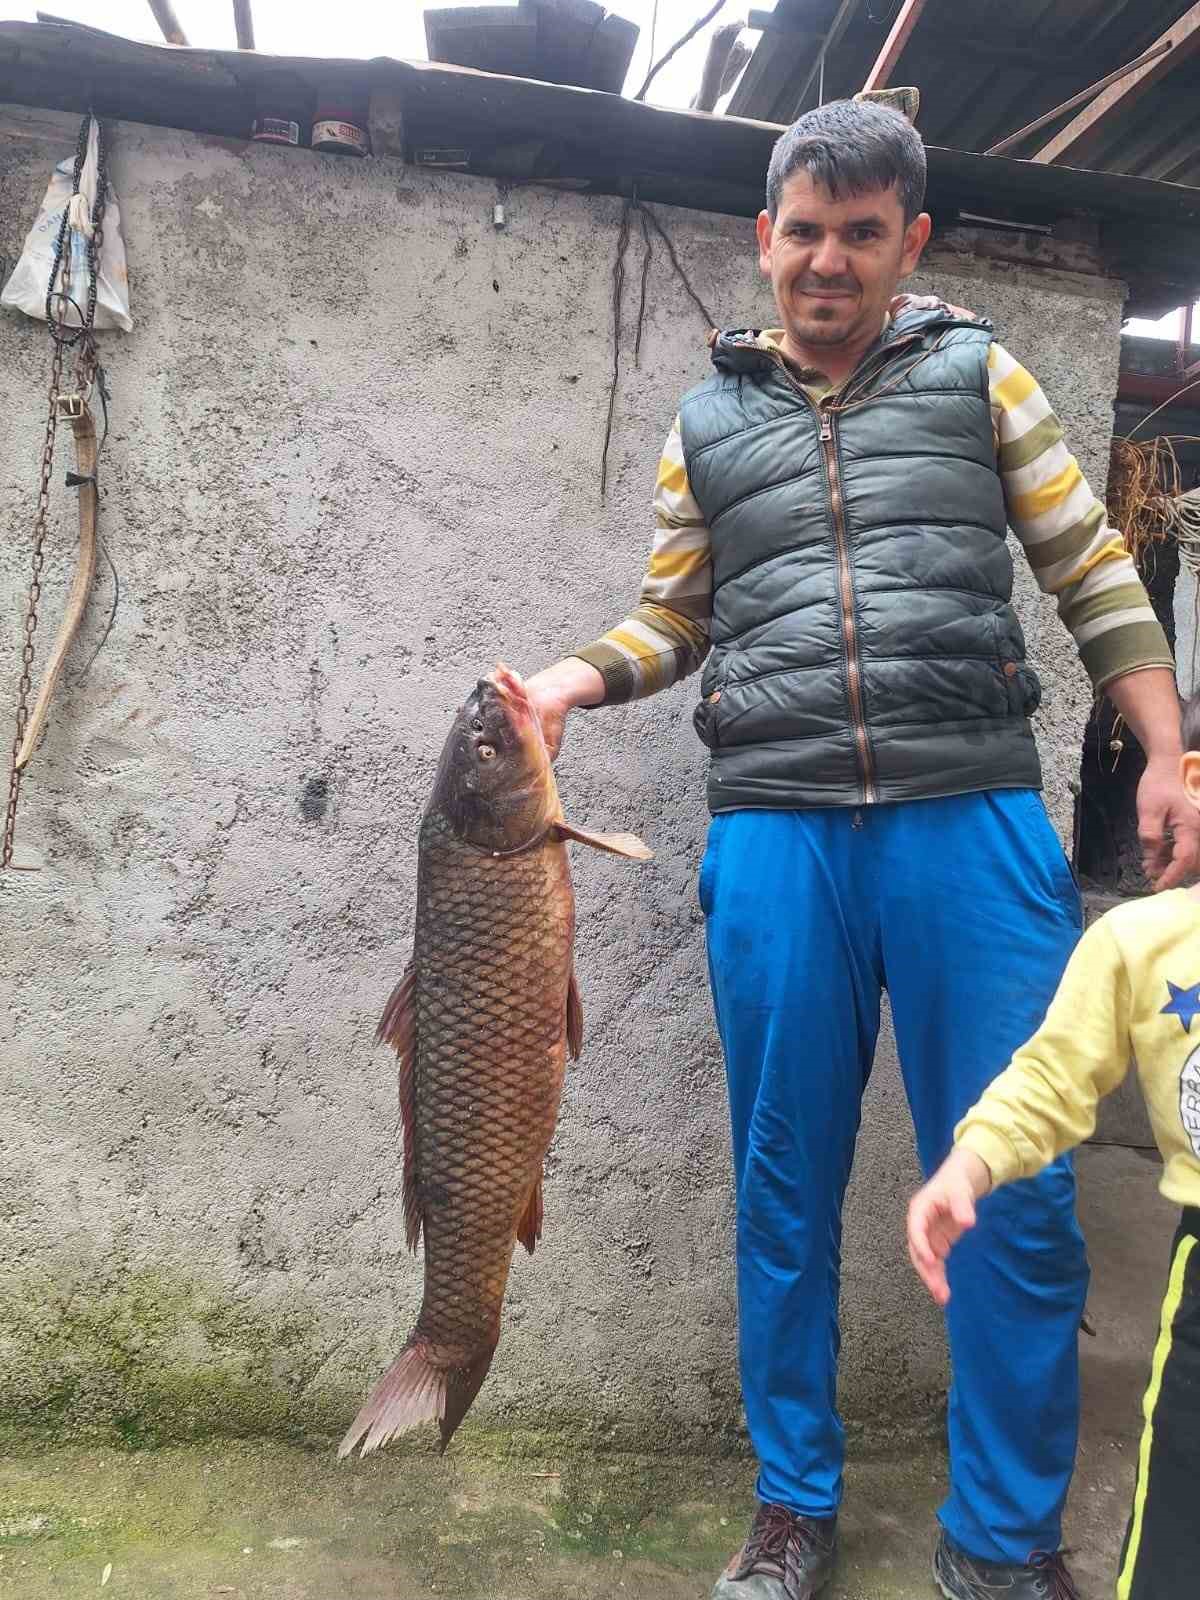 İznik Gölü’nde 25 kiloluk sarı balık yakalandı